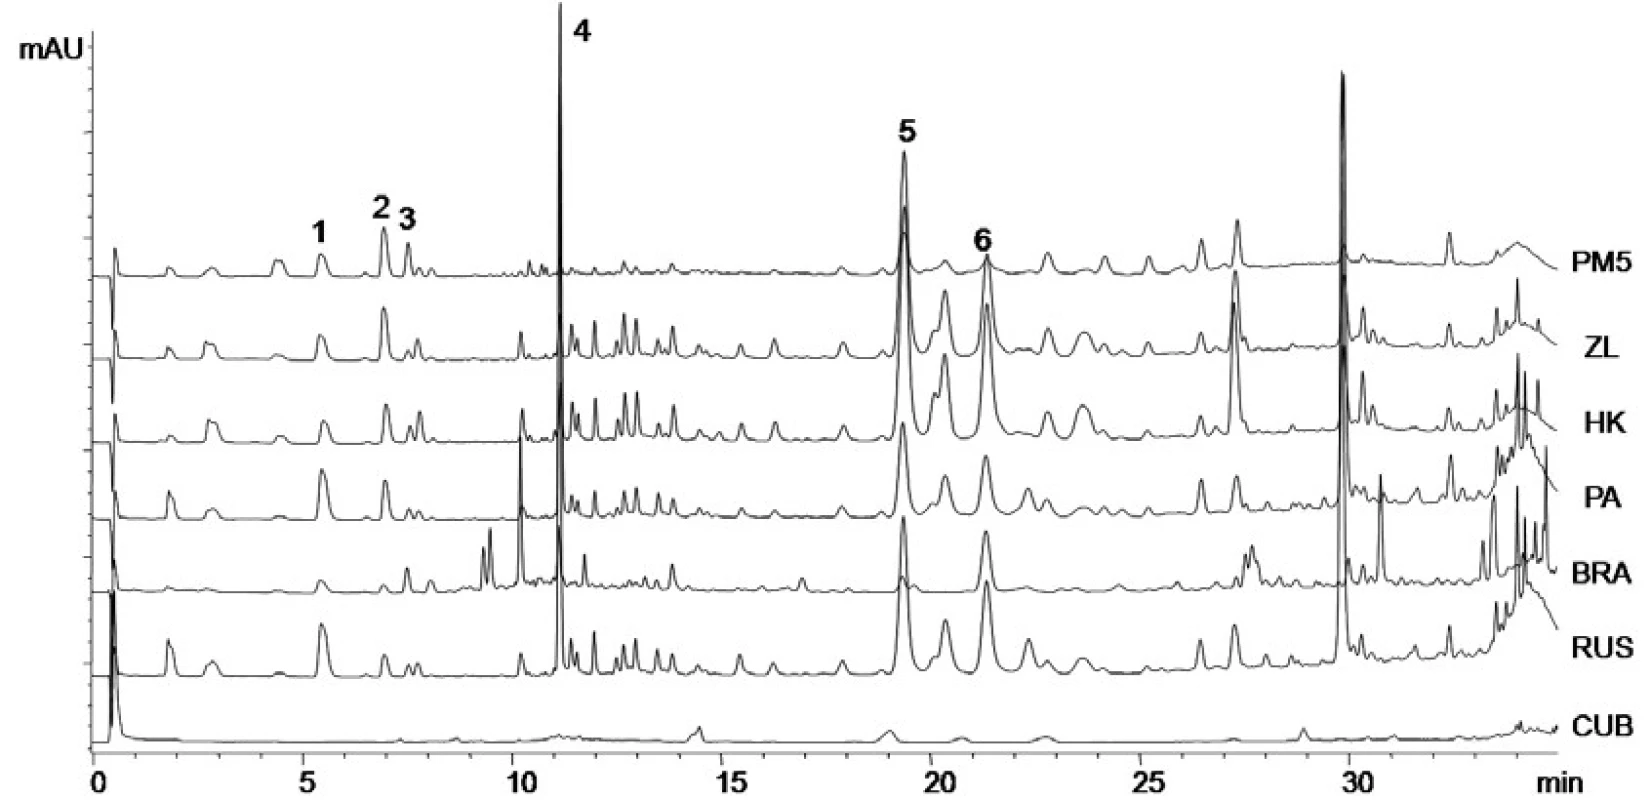 Chromatogramy vzorků propolisu z různých lokalit
kyselina p-kumarová (1), kyselina ferulová (2), kyselina benzoová (3), kyselina skořicová (4), chrysin (5), galangin (6)